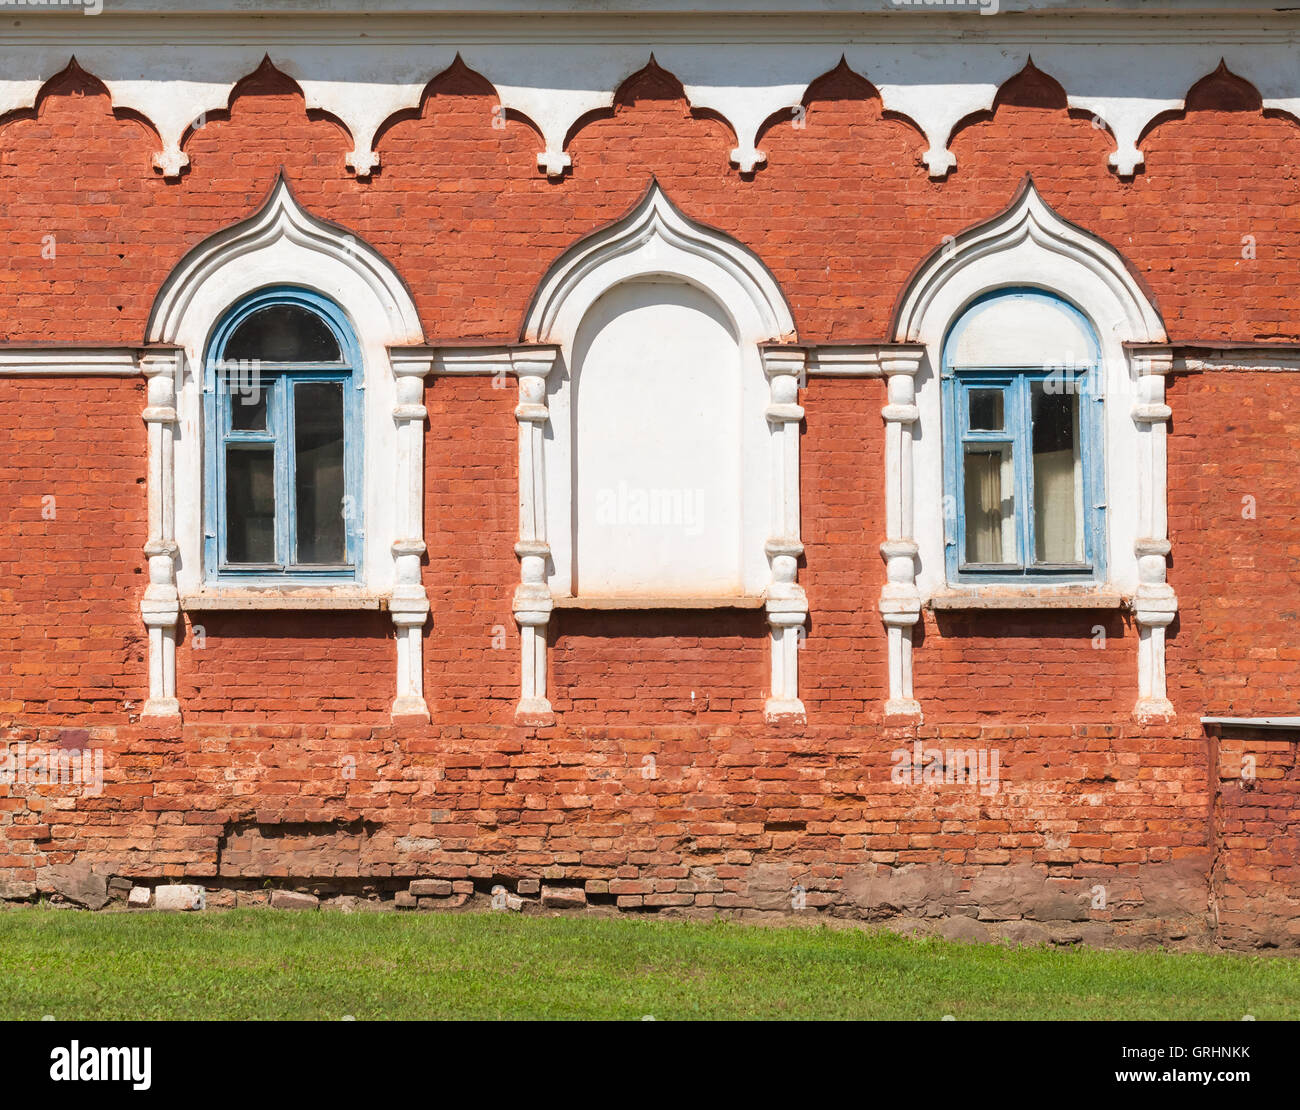 Pared de ladrillo rojo con ventanas en blanco marcos decorativos. Detalles de la arquitectura tradicional rusa antigua Foto de stock